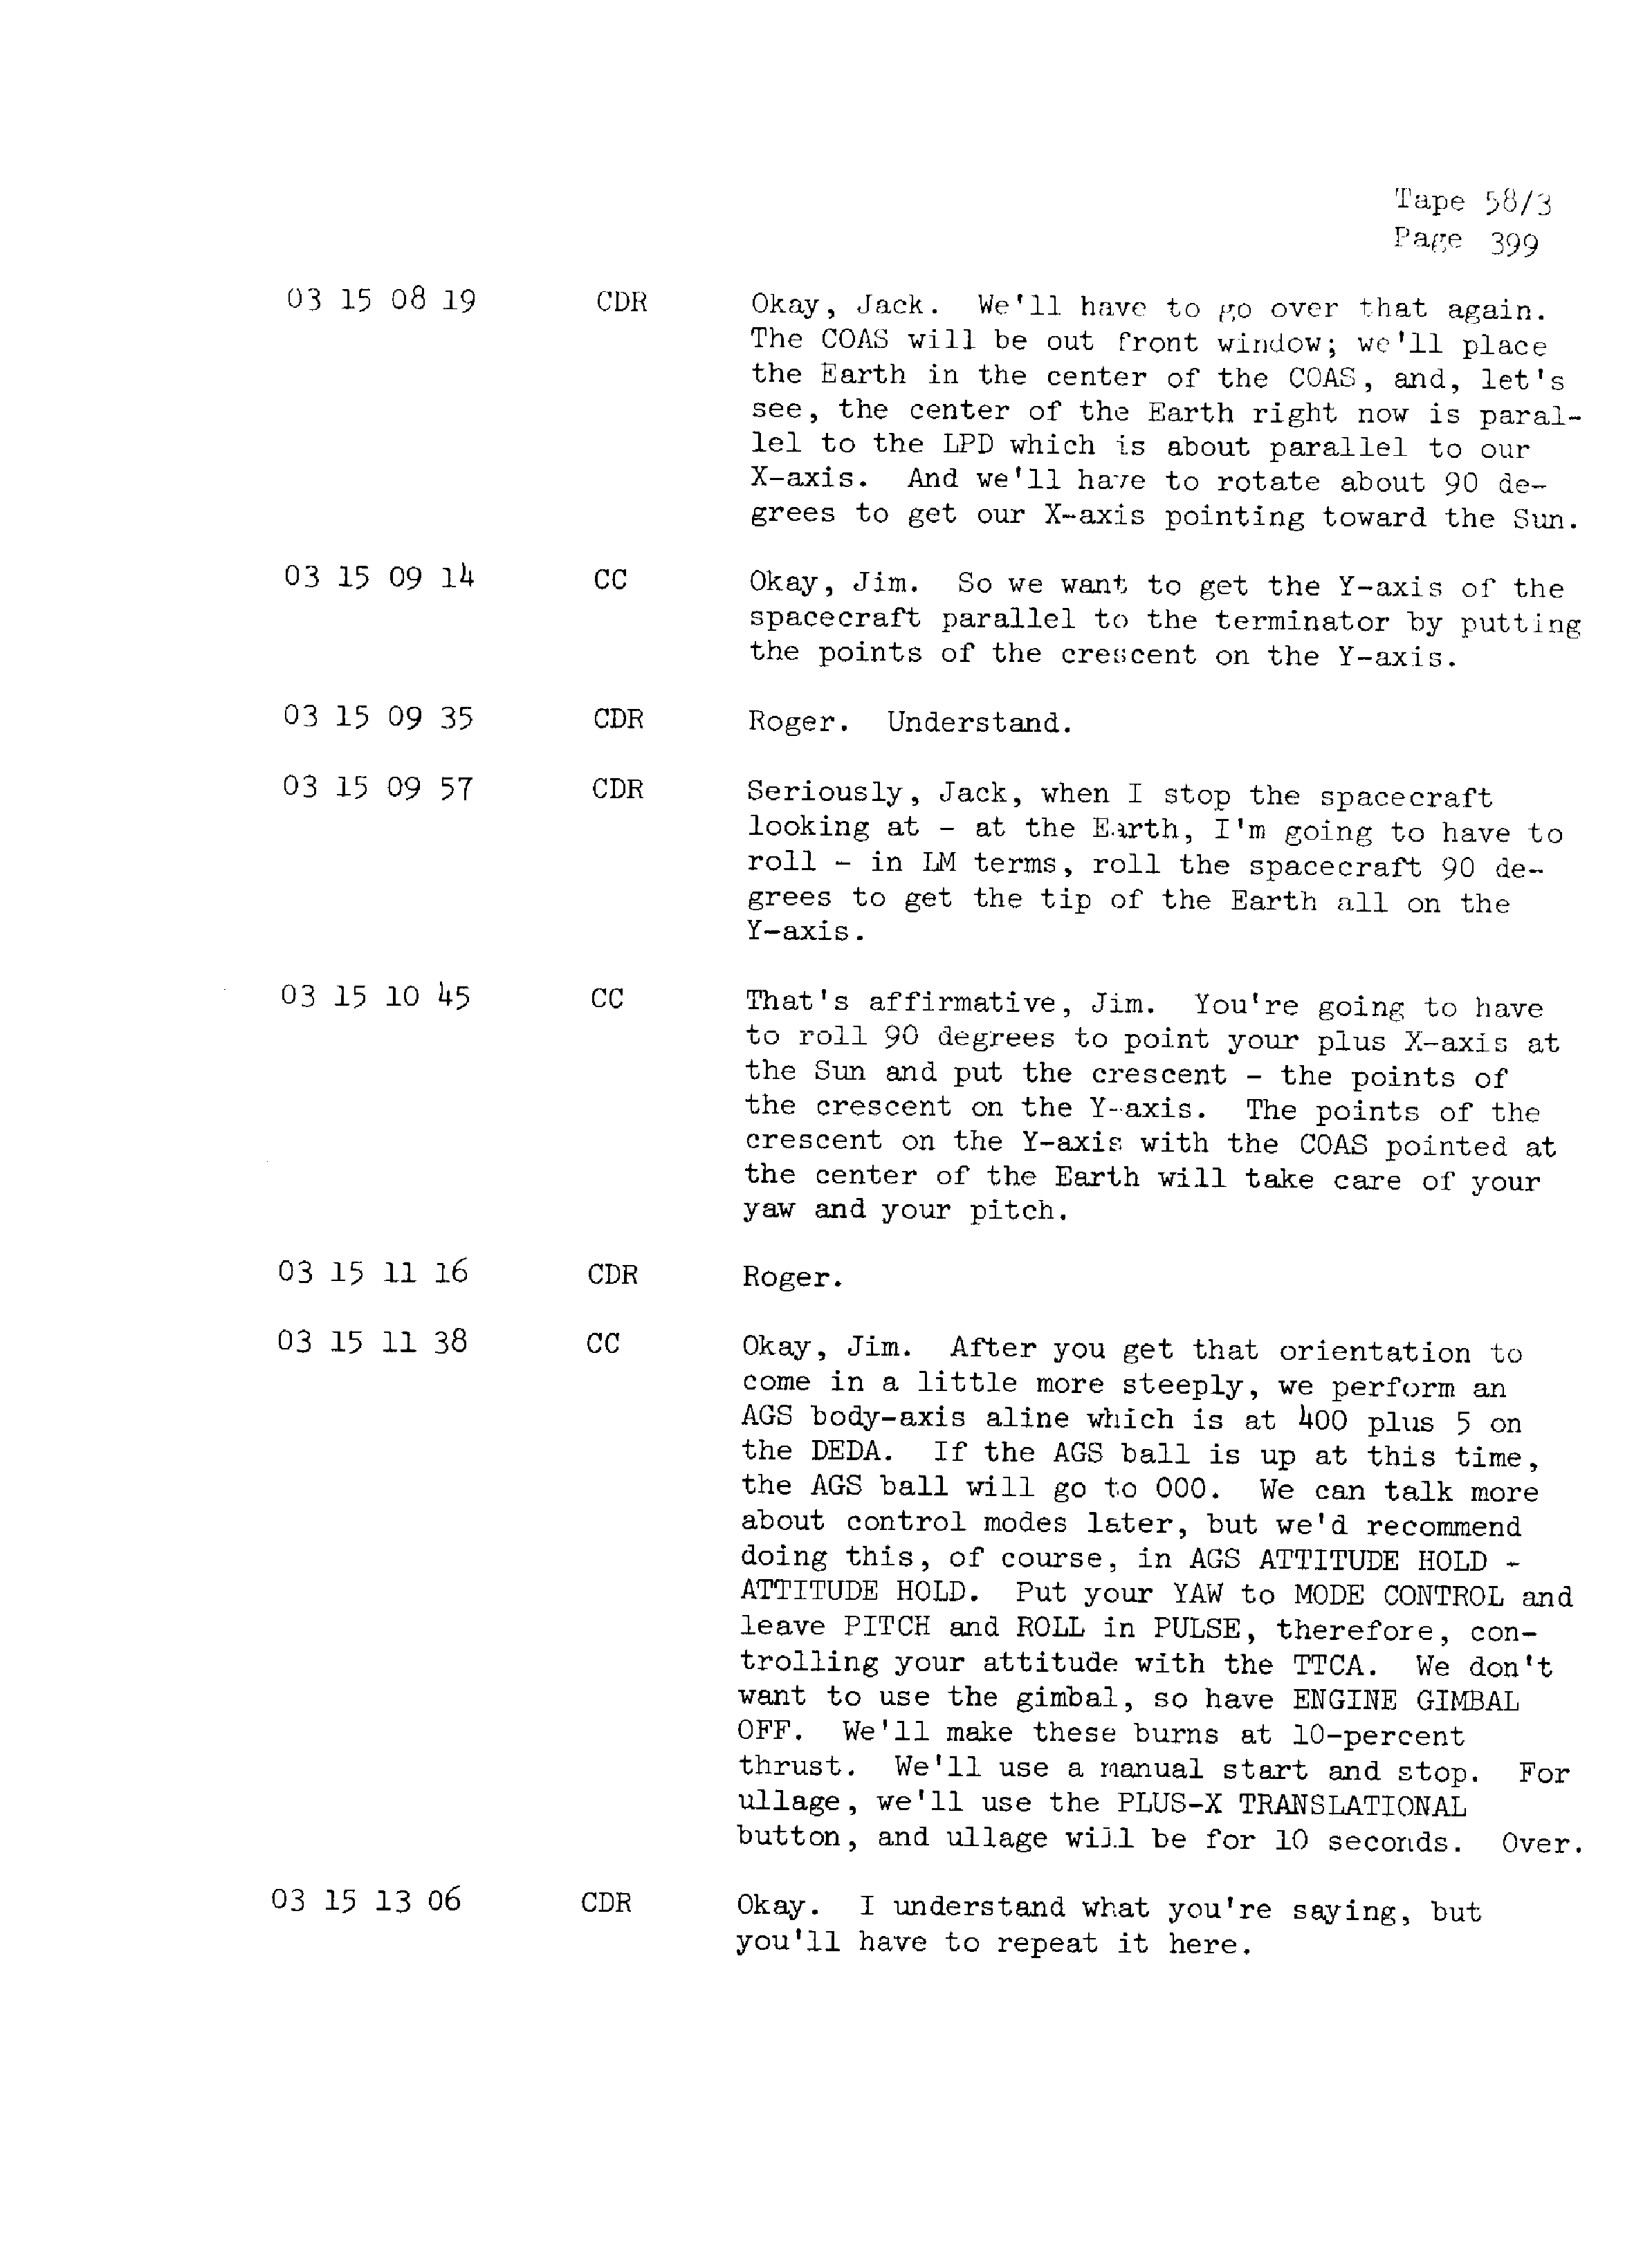 Page 406 of Apollo 13’s original transcript